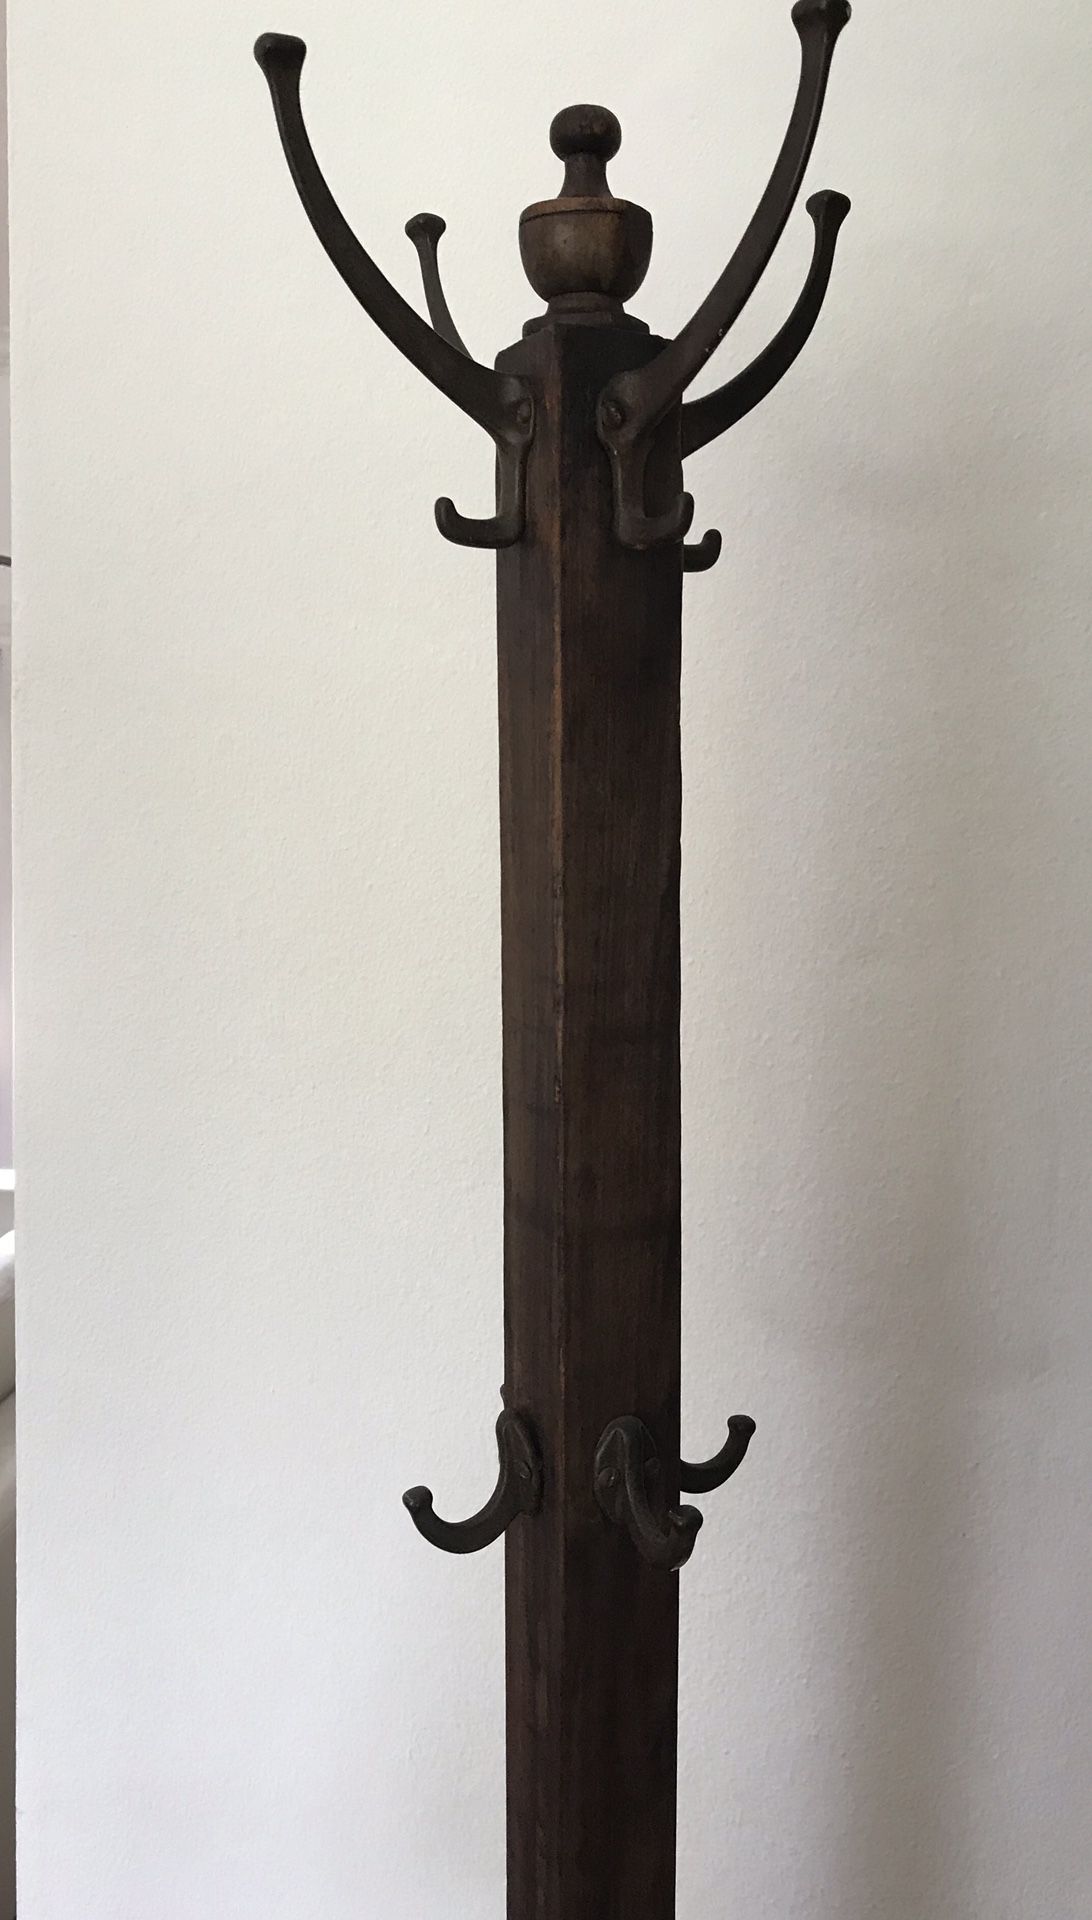 Antique wooden standing coat/hat rack